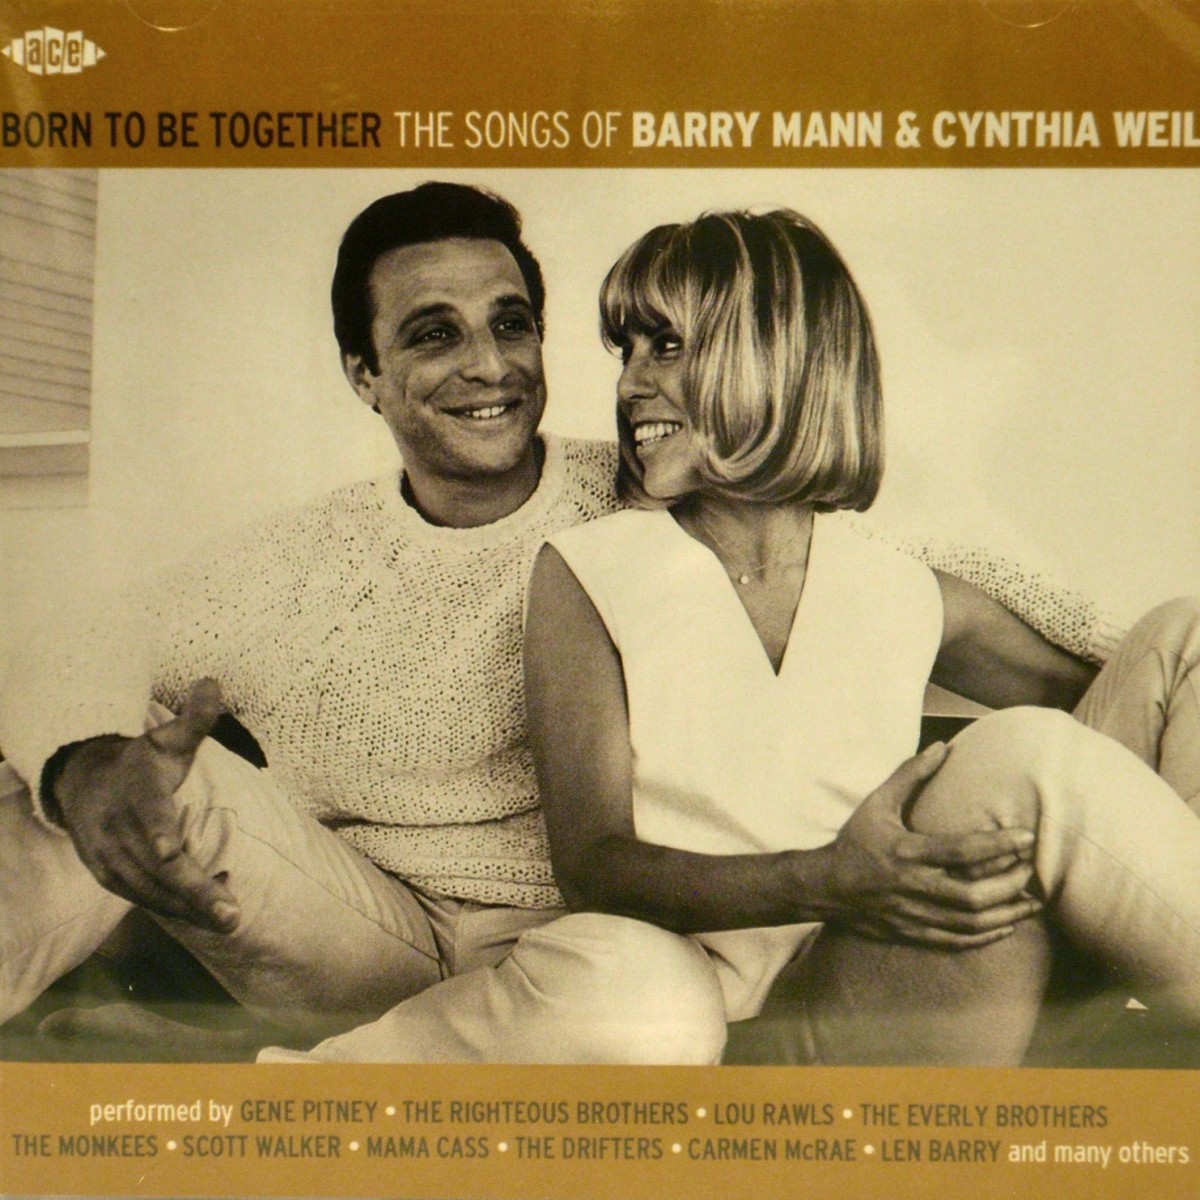 8tracks radio | Barry Mann & Cynthia Weil Songbook (42 songs 